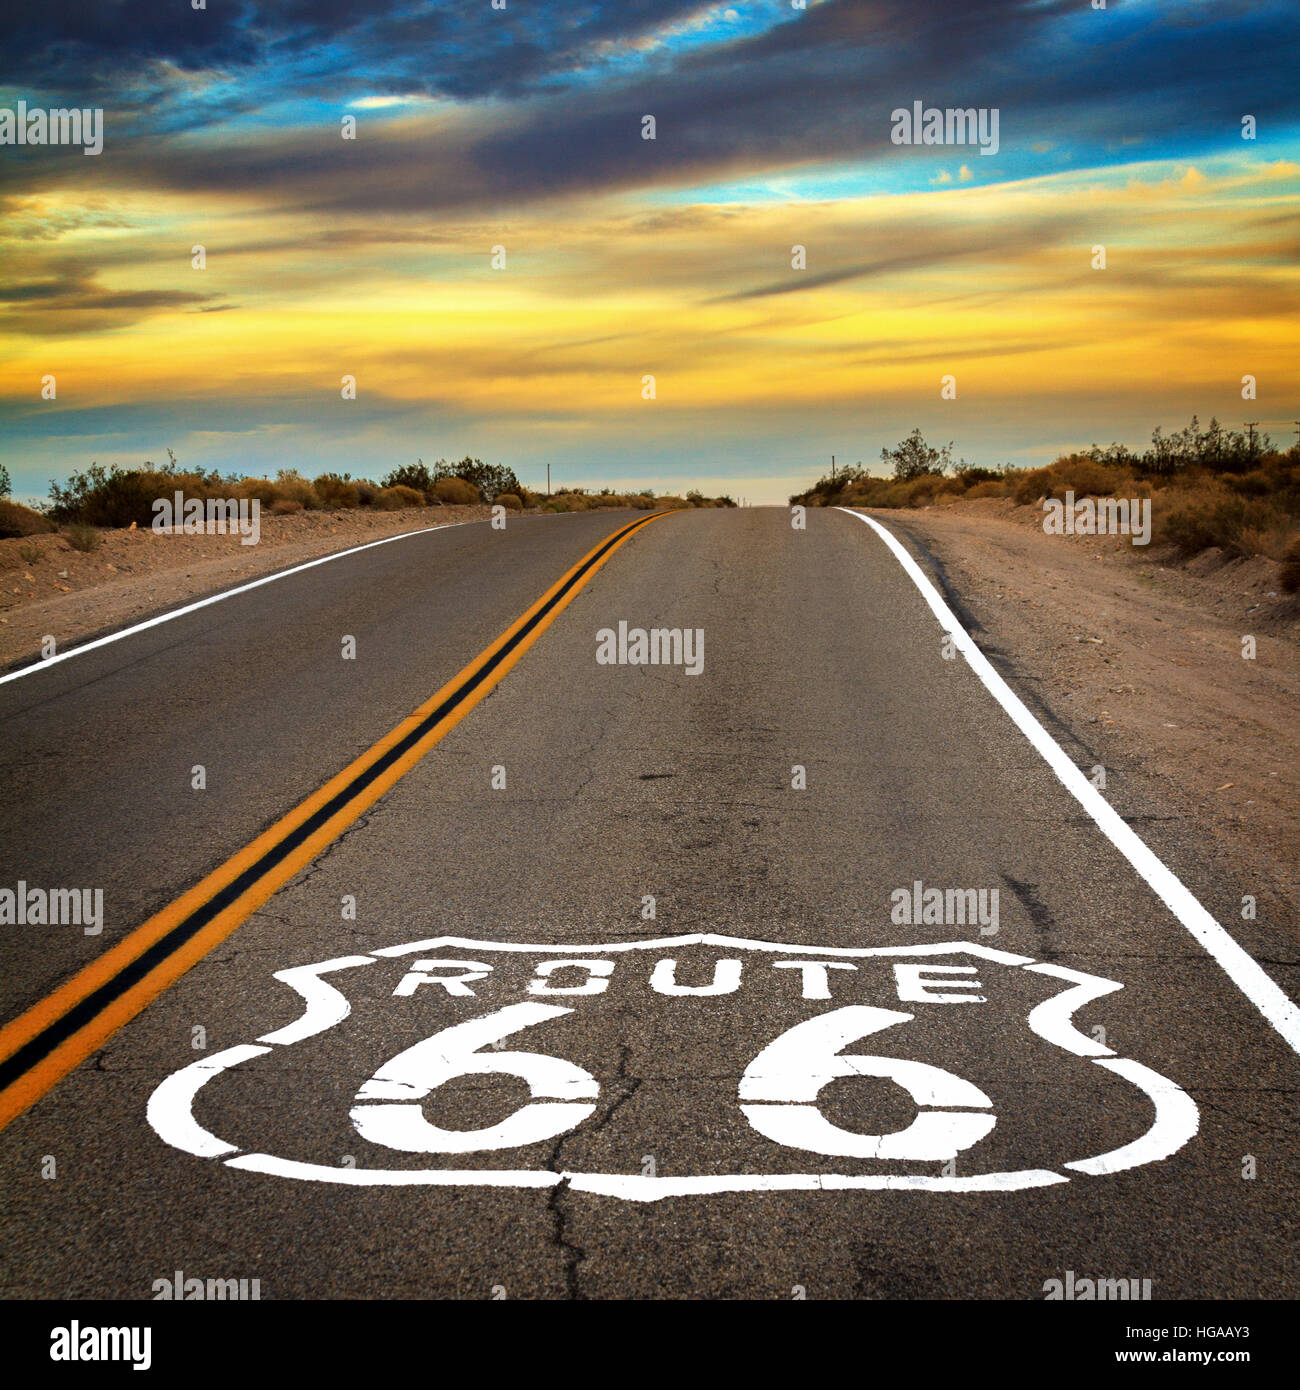 Eine Straße mit einer Route 66 singen auf dem Boden in der Mojave-Wüste in Kalifornien mit einem dynamischen Himmel. Stockfoto